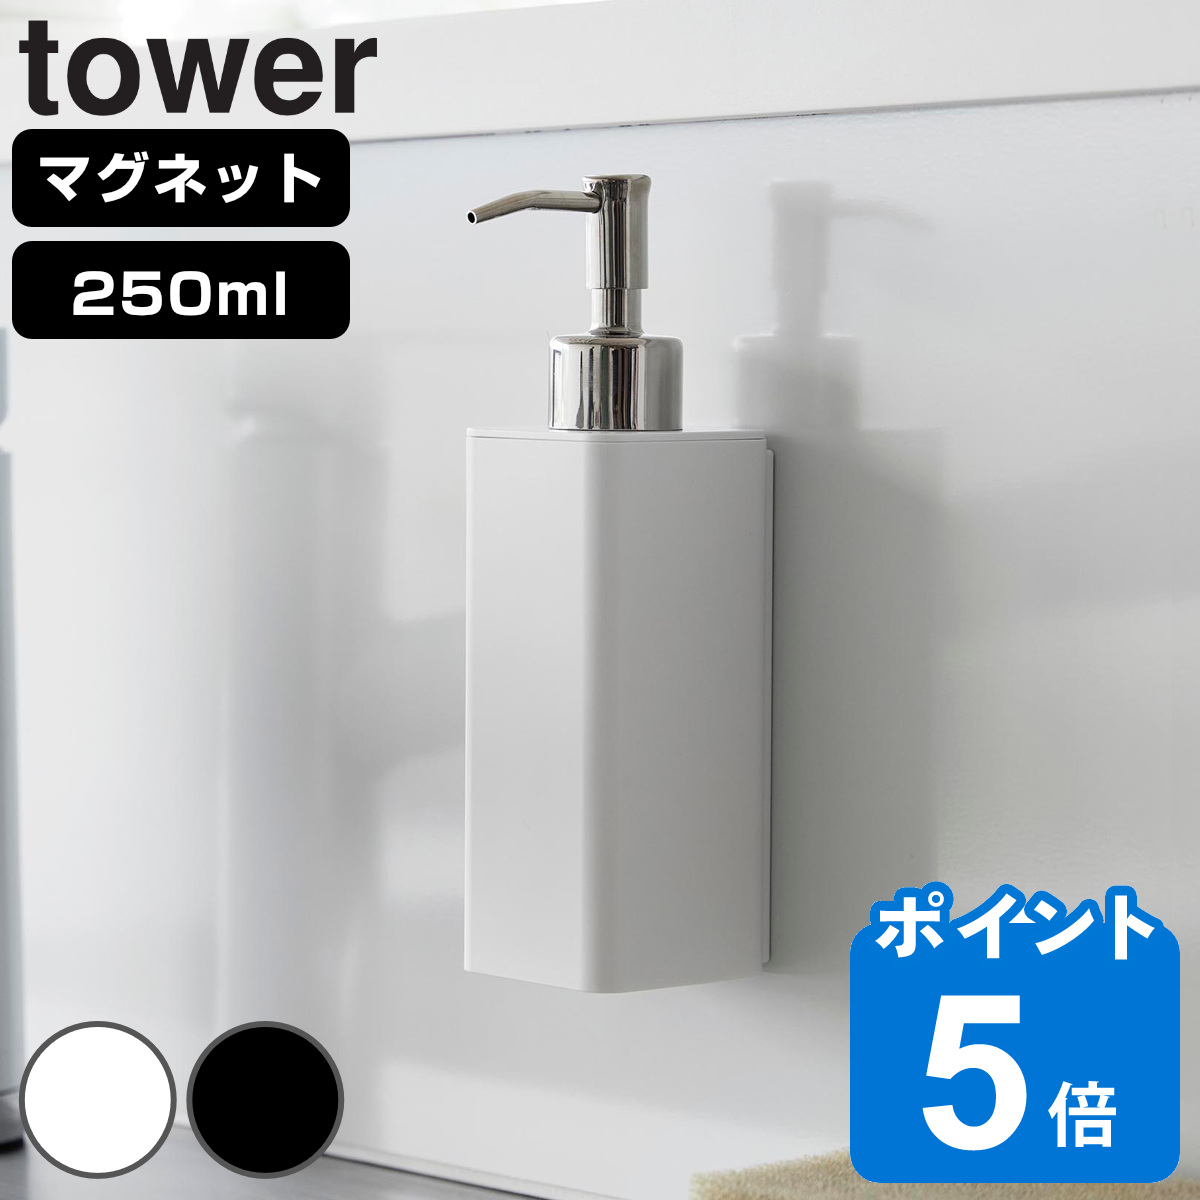 山崎実業 tower マグネットキッチンディスペンサー タワー